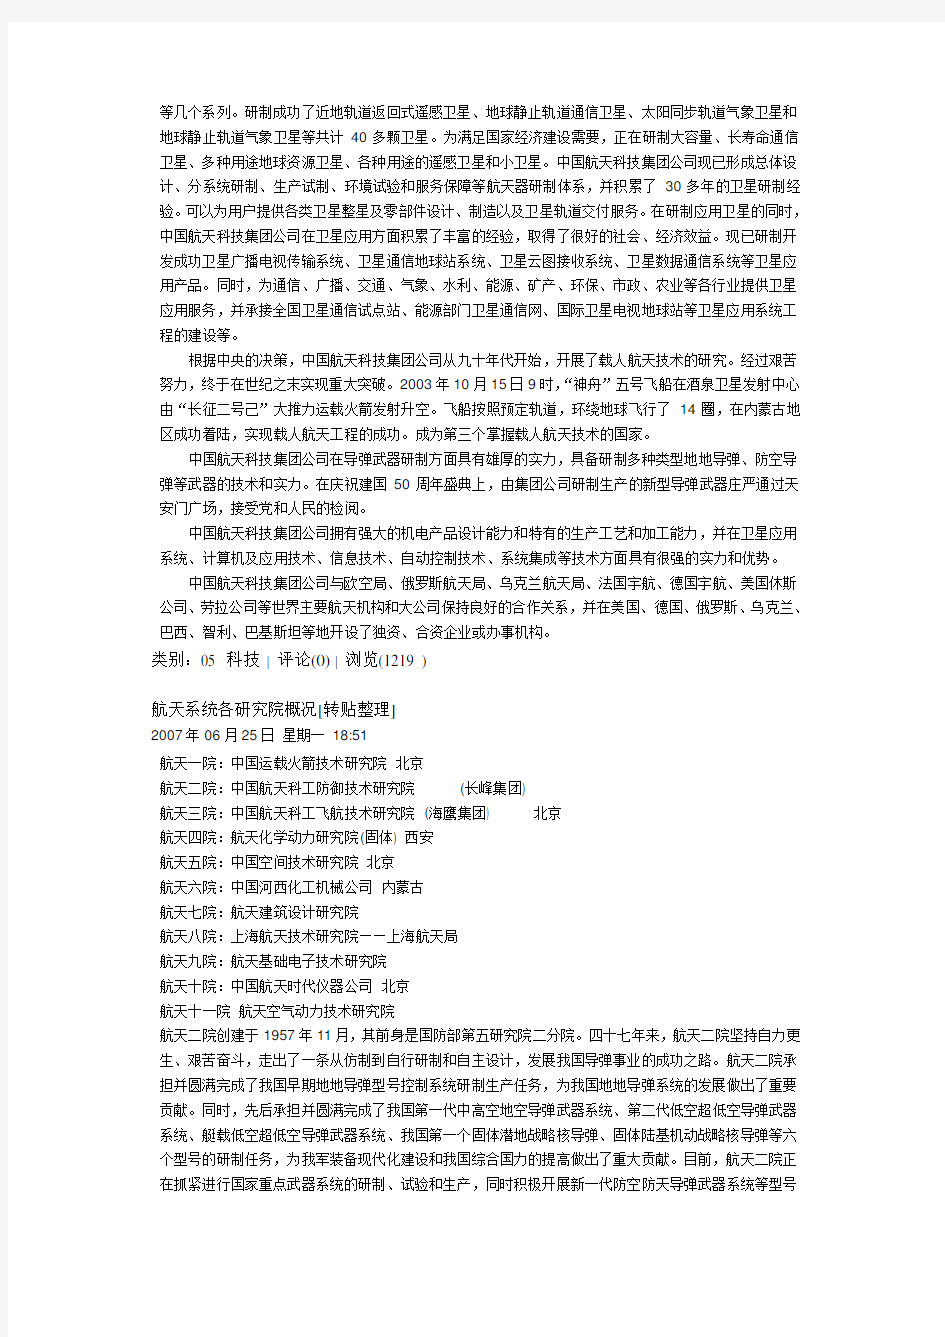 中国航天科技集团机构概况